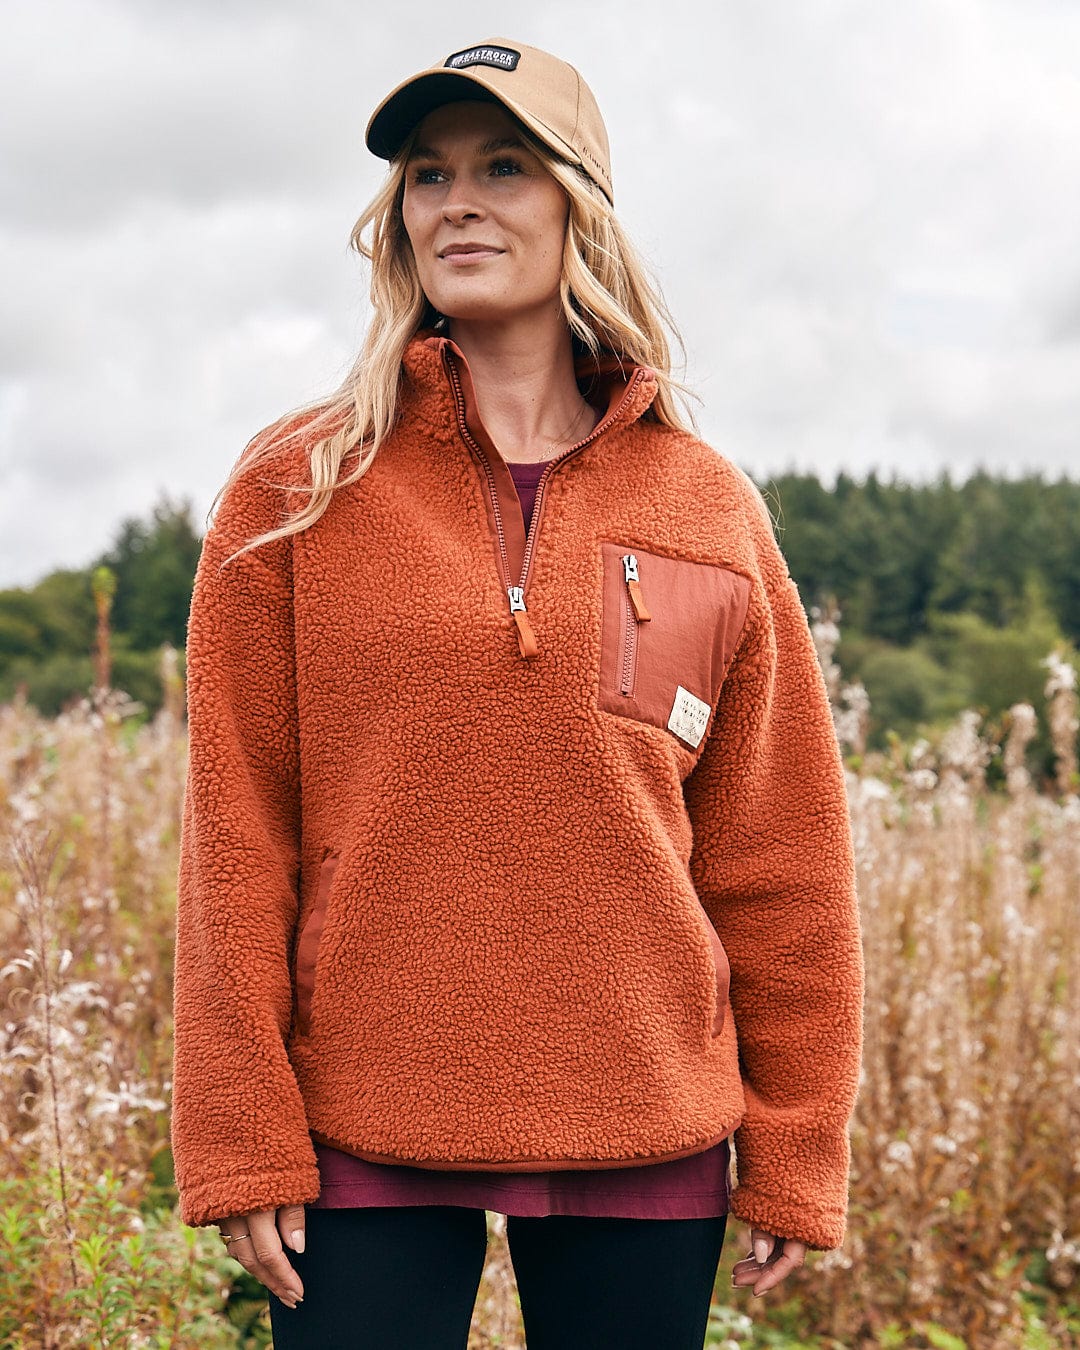 A woman is standing in a field wearing a Saltrock Zella Solid - Womens Borg Fleece - Burnt Orange pullover.